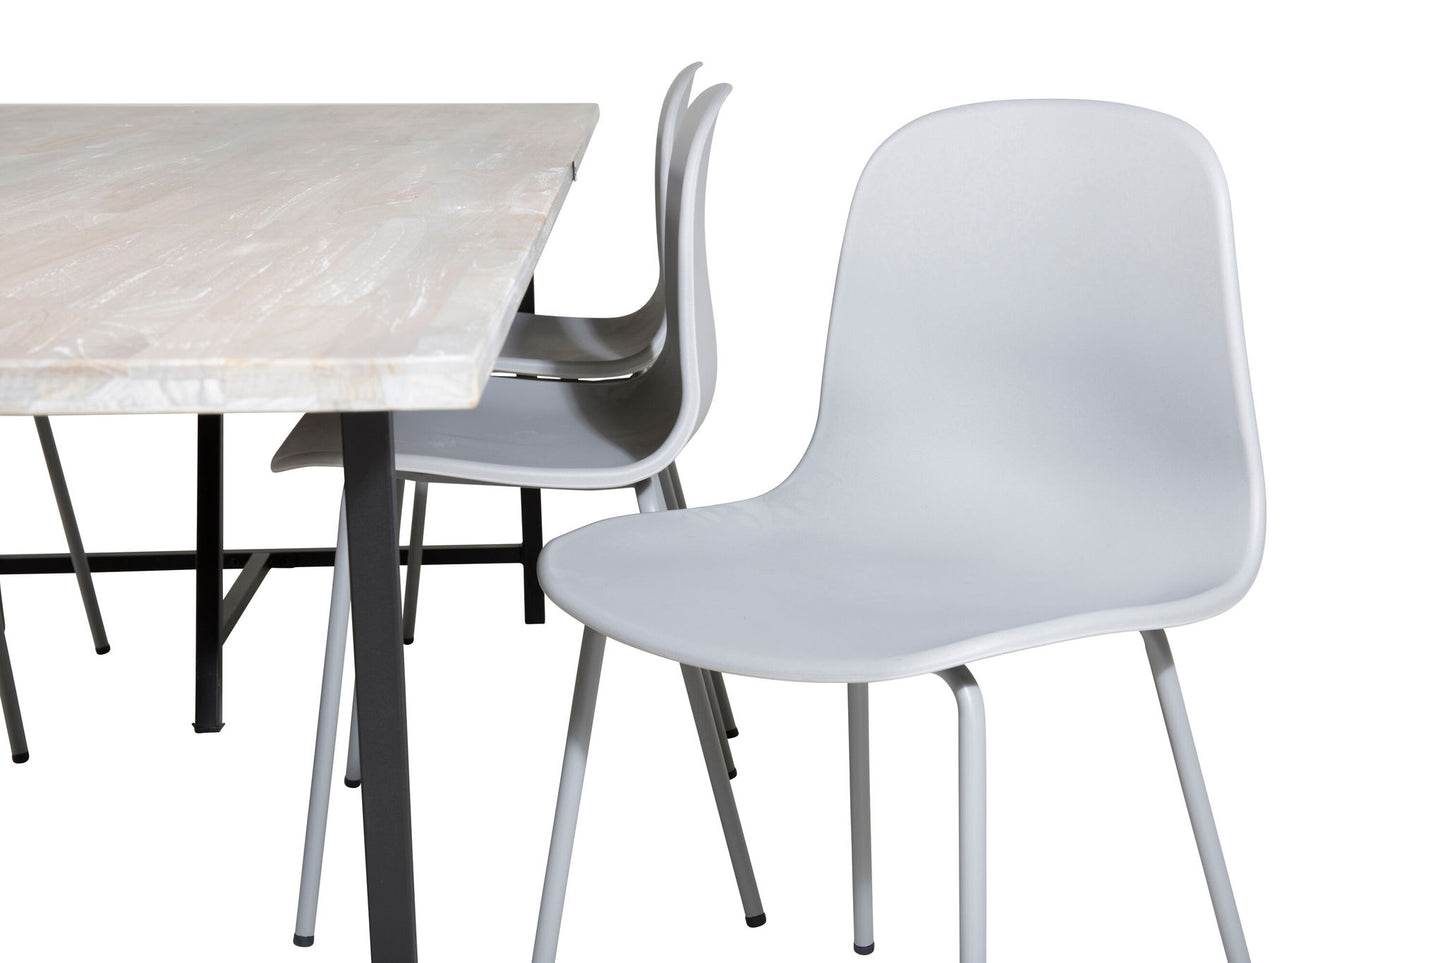 Jepara - Spisebord, 250*100*H76 - Grå /Sort+Arctic Spisebordsstol - Grå ben - Grå Plast